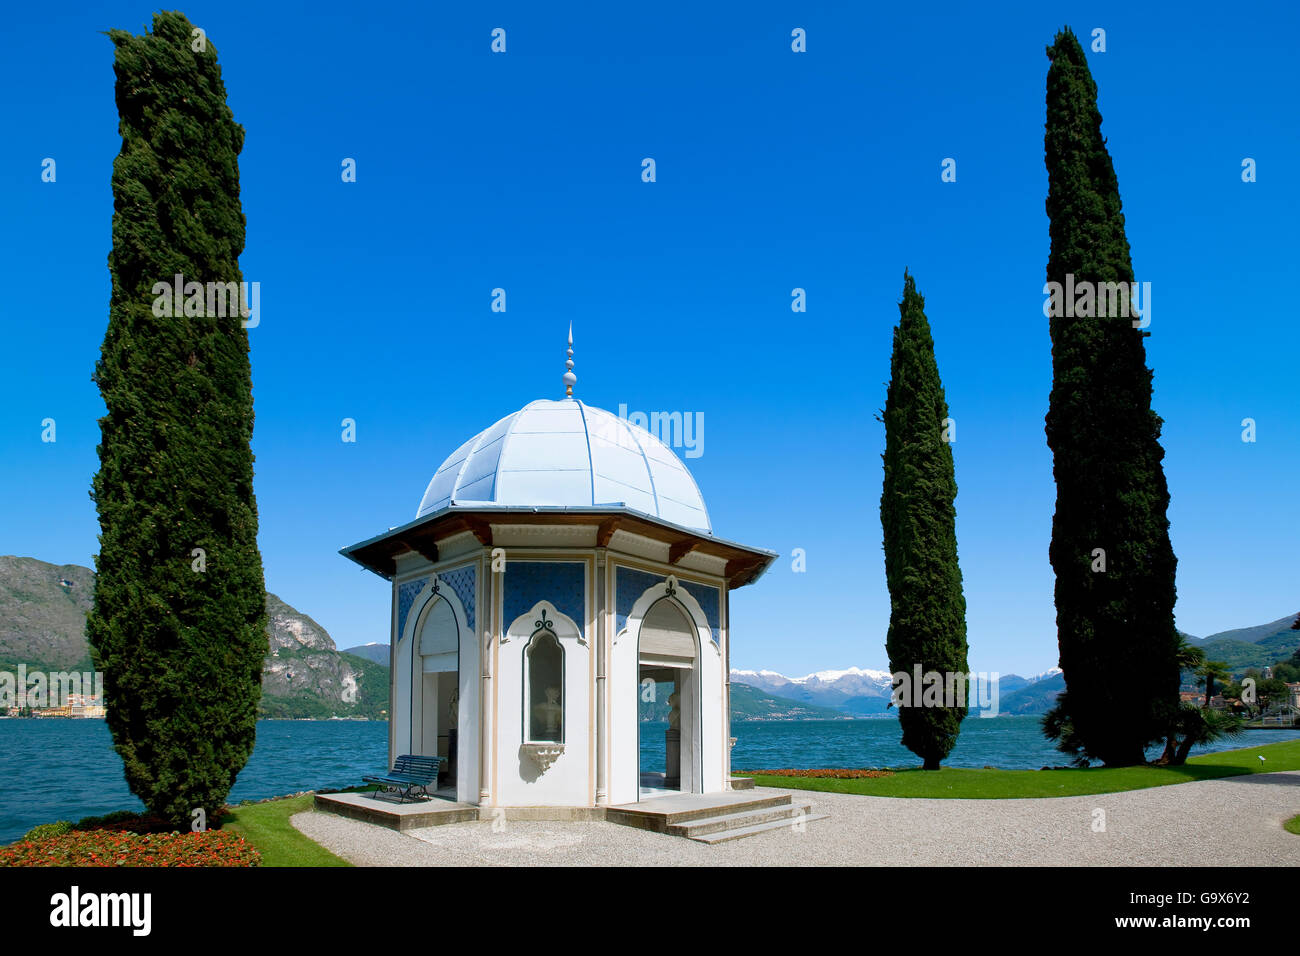 Garden of the villa Melzi near Bellagio on Lake Como Stock Photo